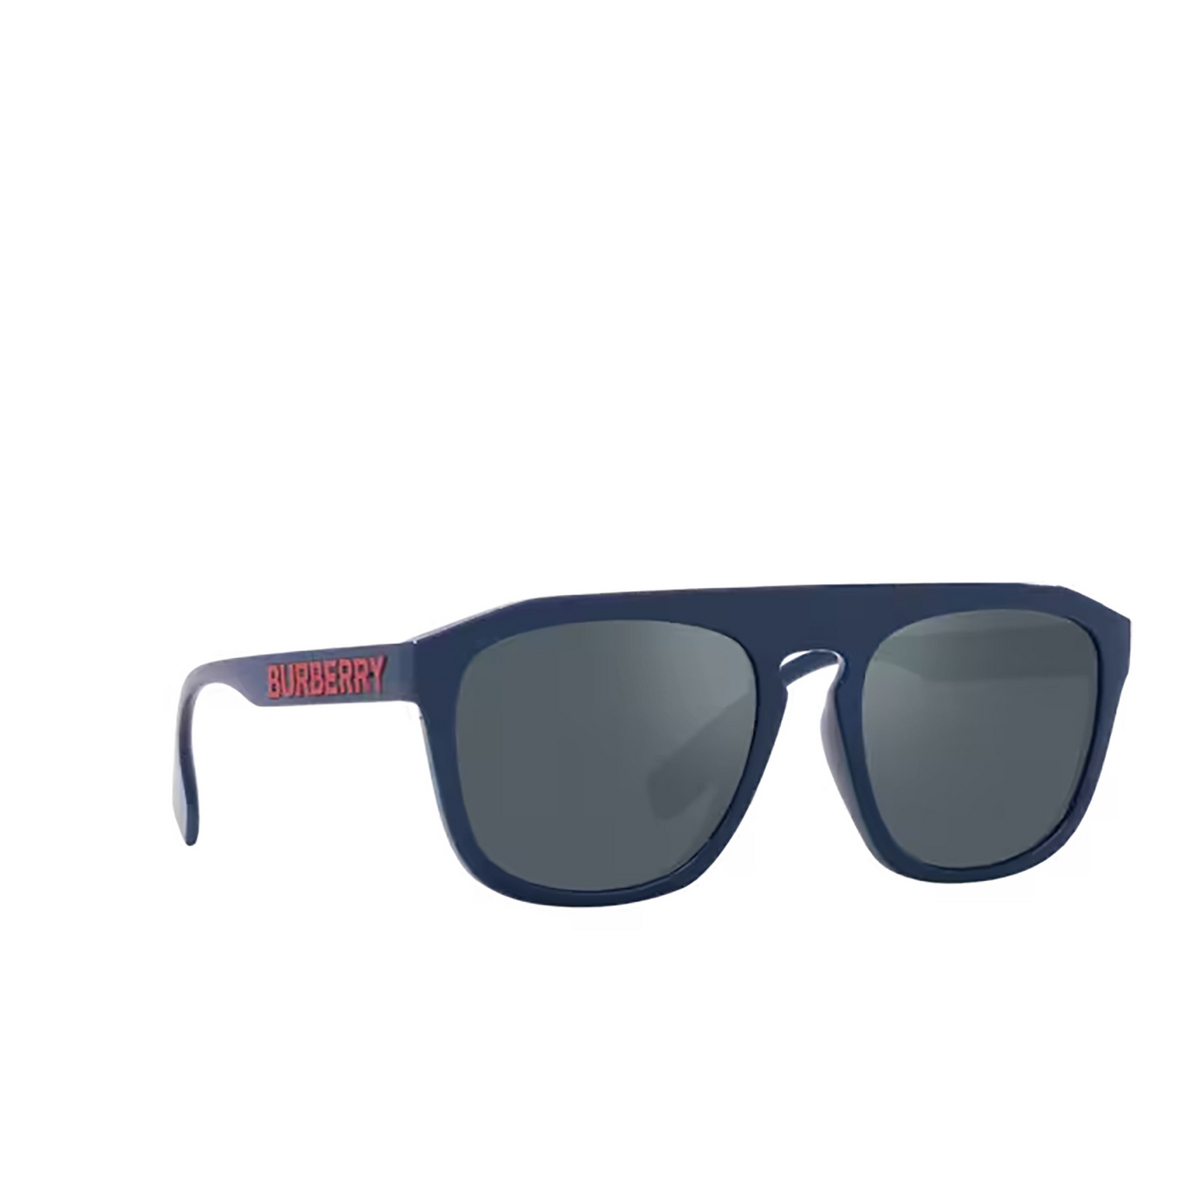 Burberry WREN Sunglasses 405825 Blue - three-quarters view